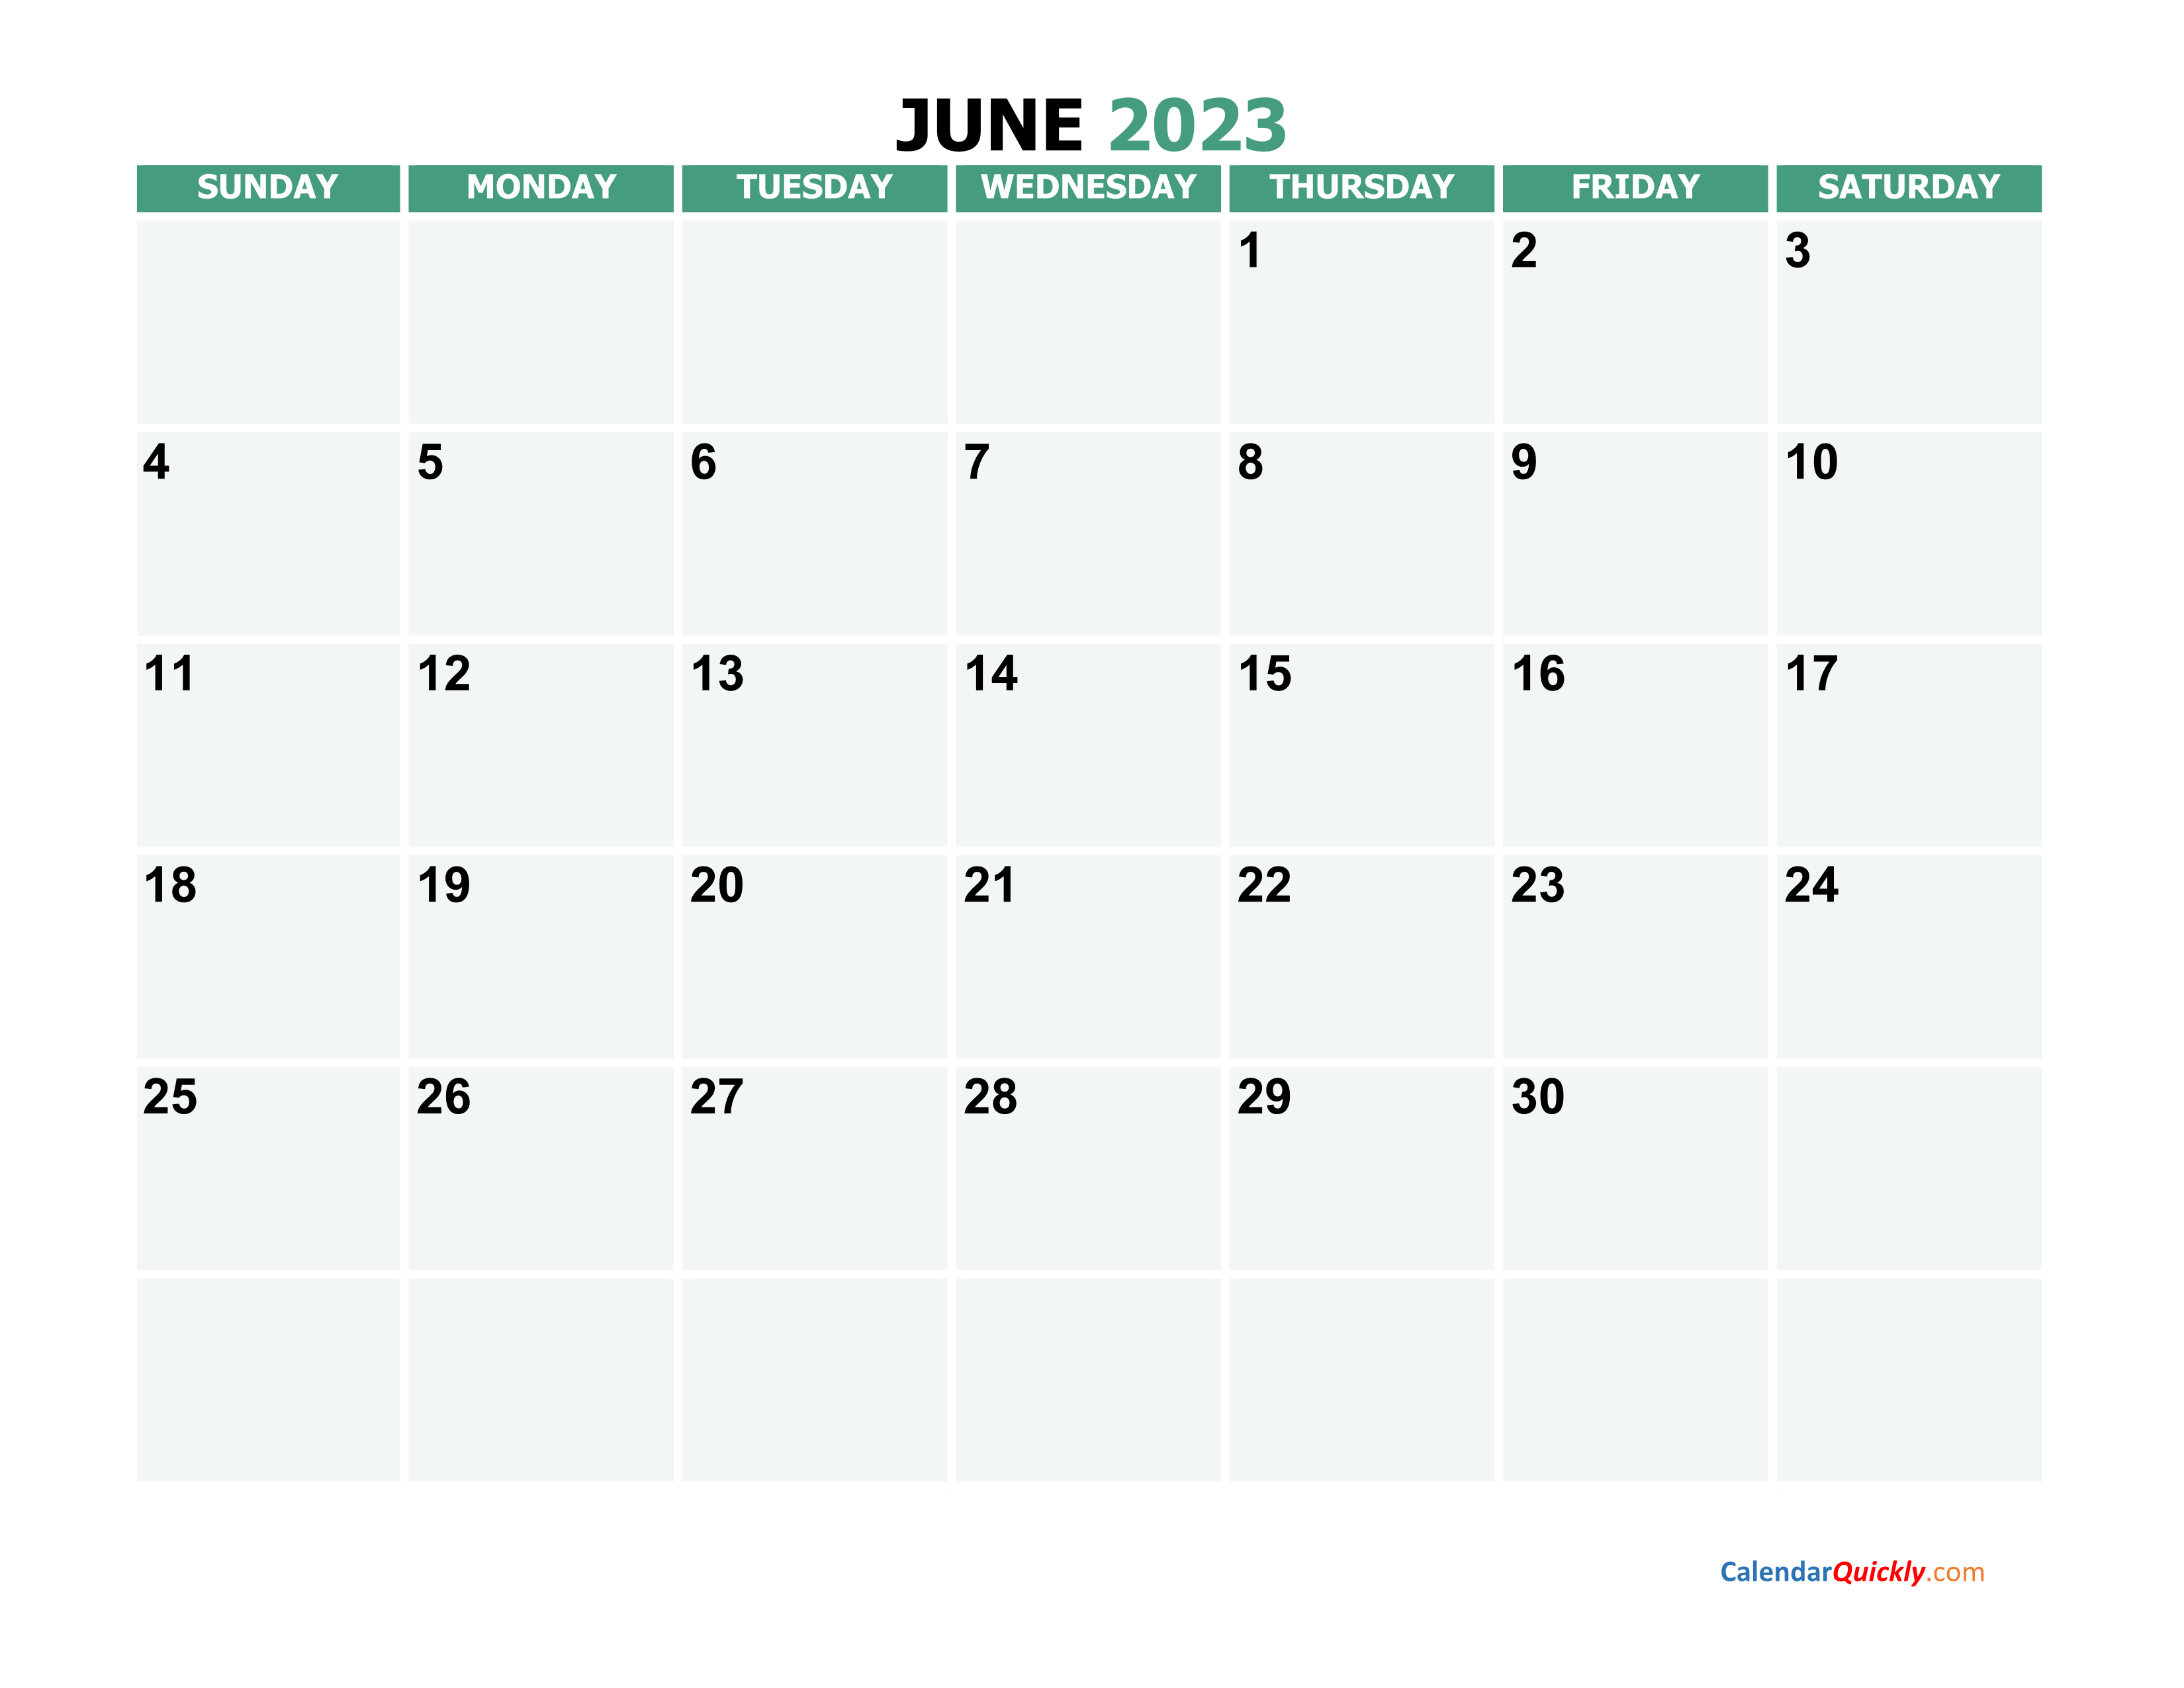 June 2023 Calendars Calendar Quickly